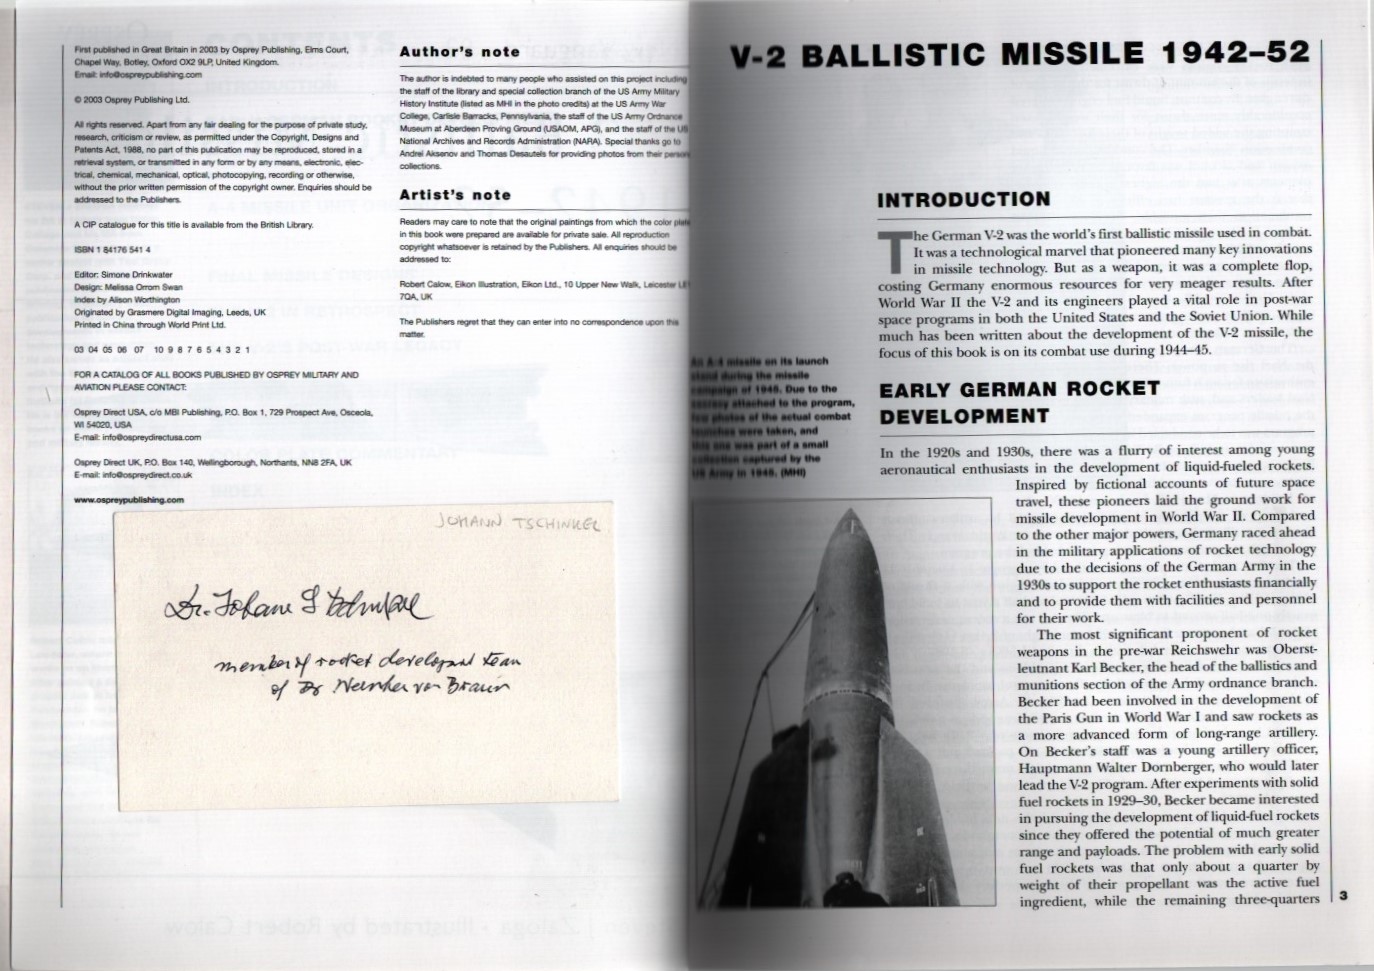 New Vanguard 82: V-2 Ballistic Missile 1942-52 by Steven J Zaloga, Signed by Johann Tschinkel.